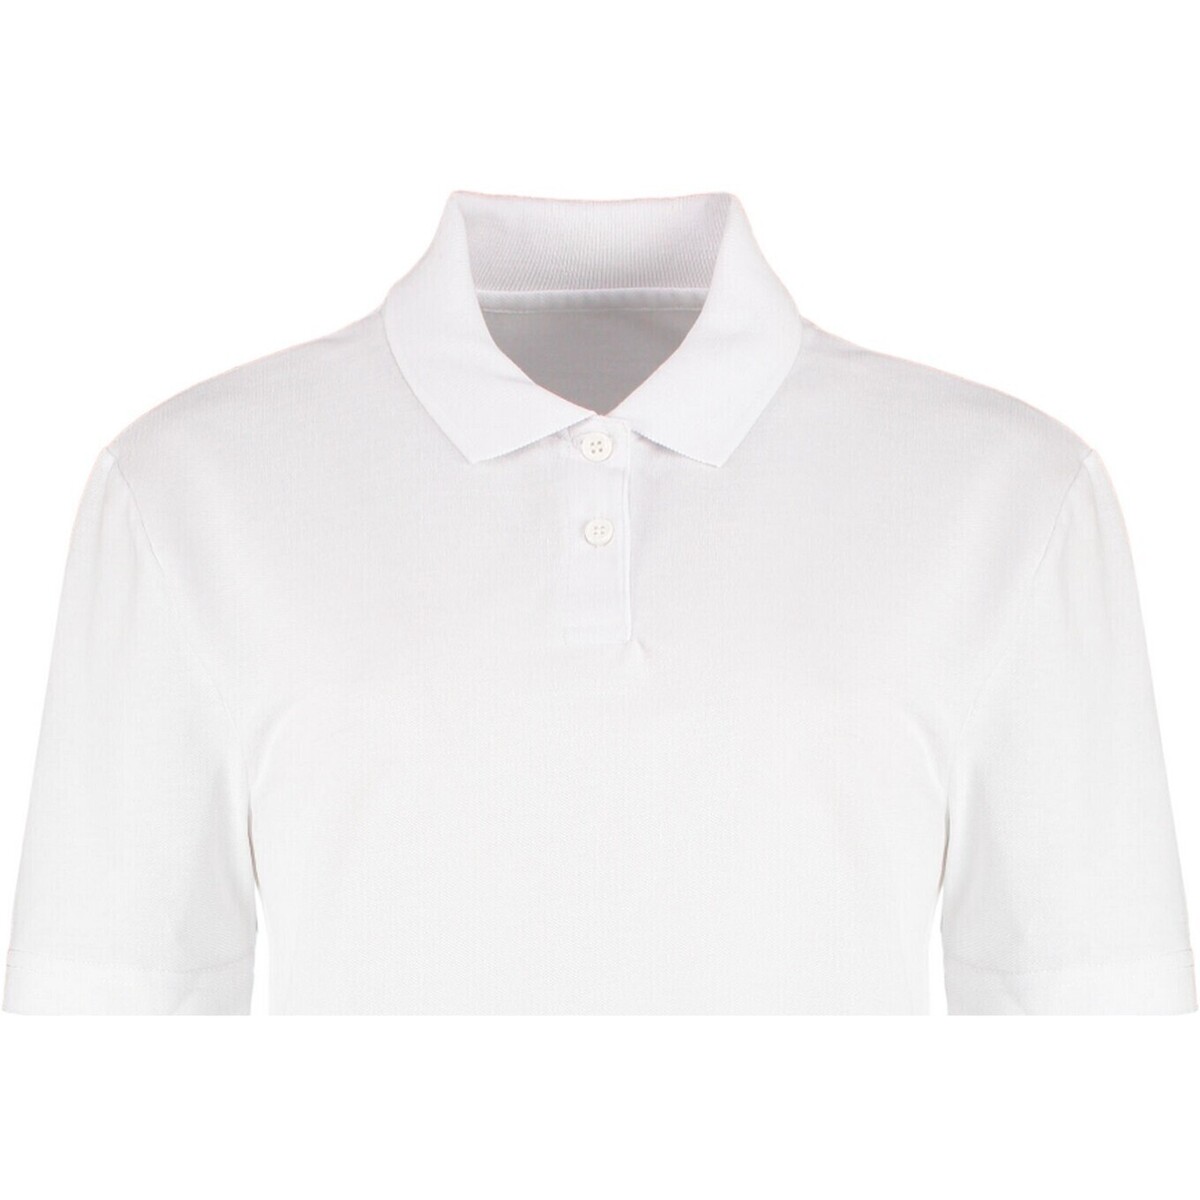 textil Mujer Tops y Camisetas Kustom Kit Workforce Blanco